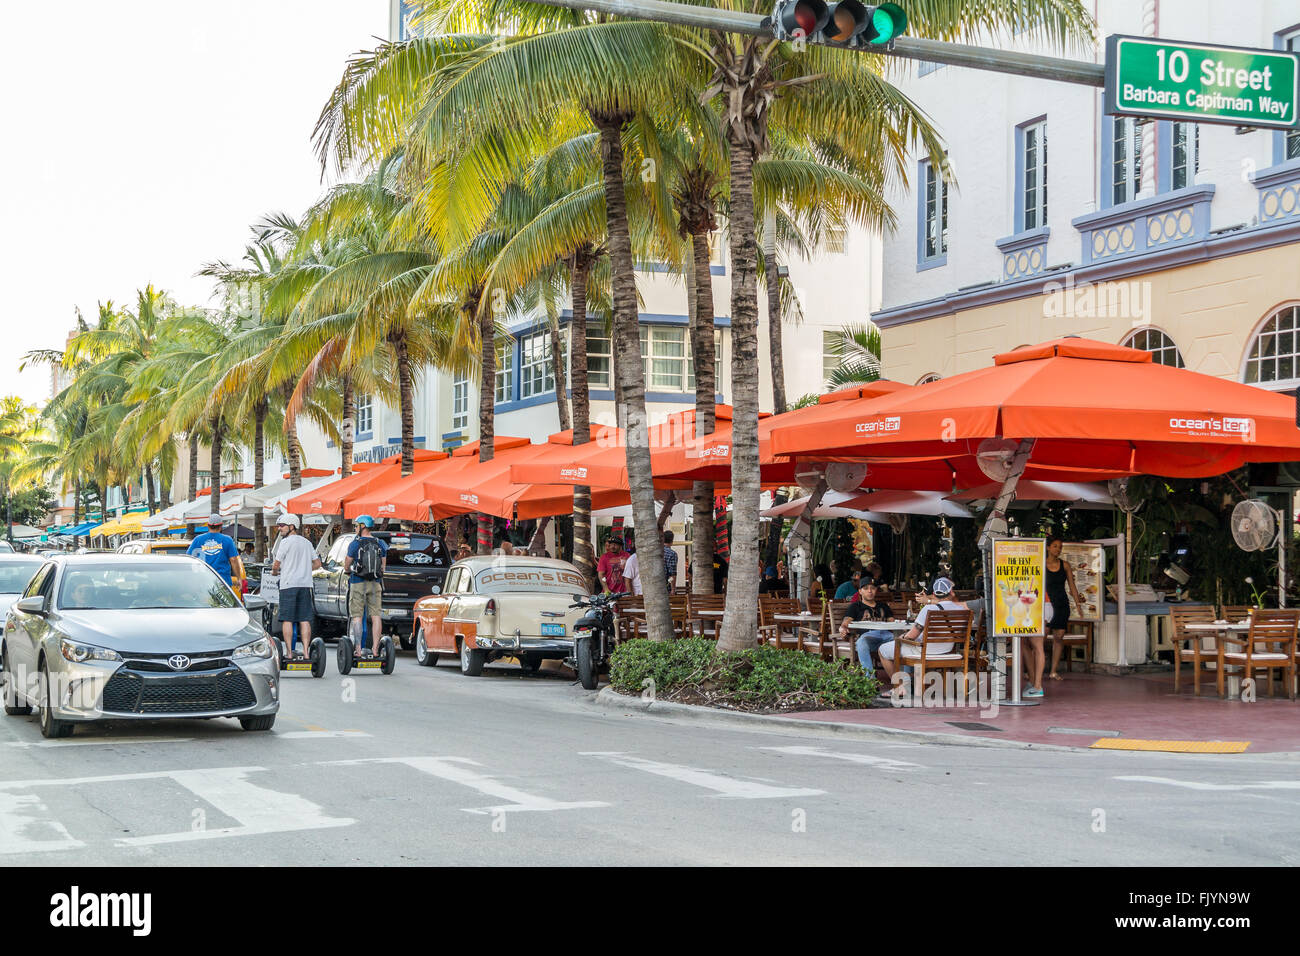 Persone, automobili e terrazze all'aperto sulla Ocean Drive a incrocio 10th Street in South Beach di Miami Beach, Florida, Stati Uniti d'America Foto Stock